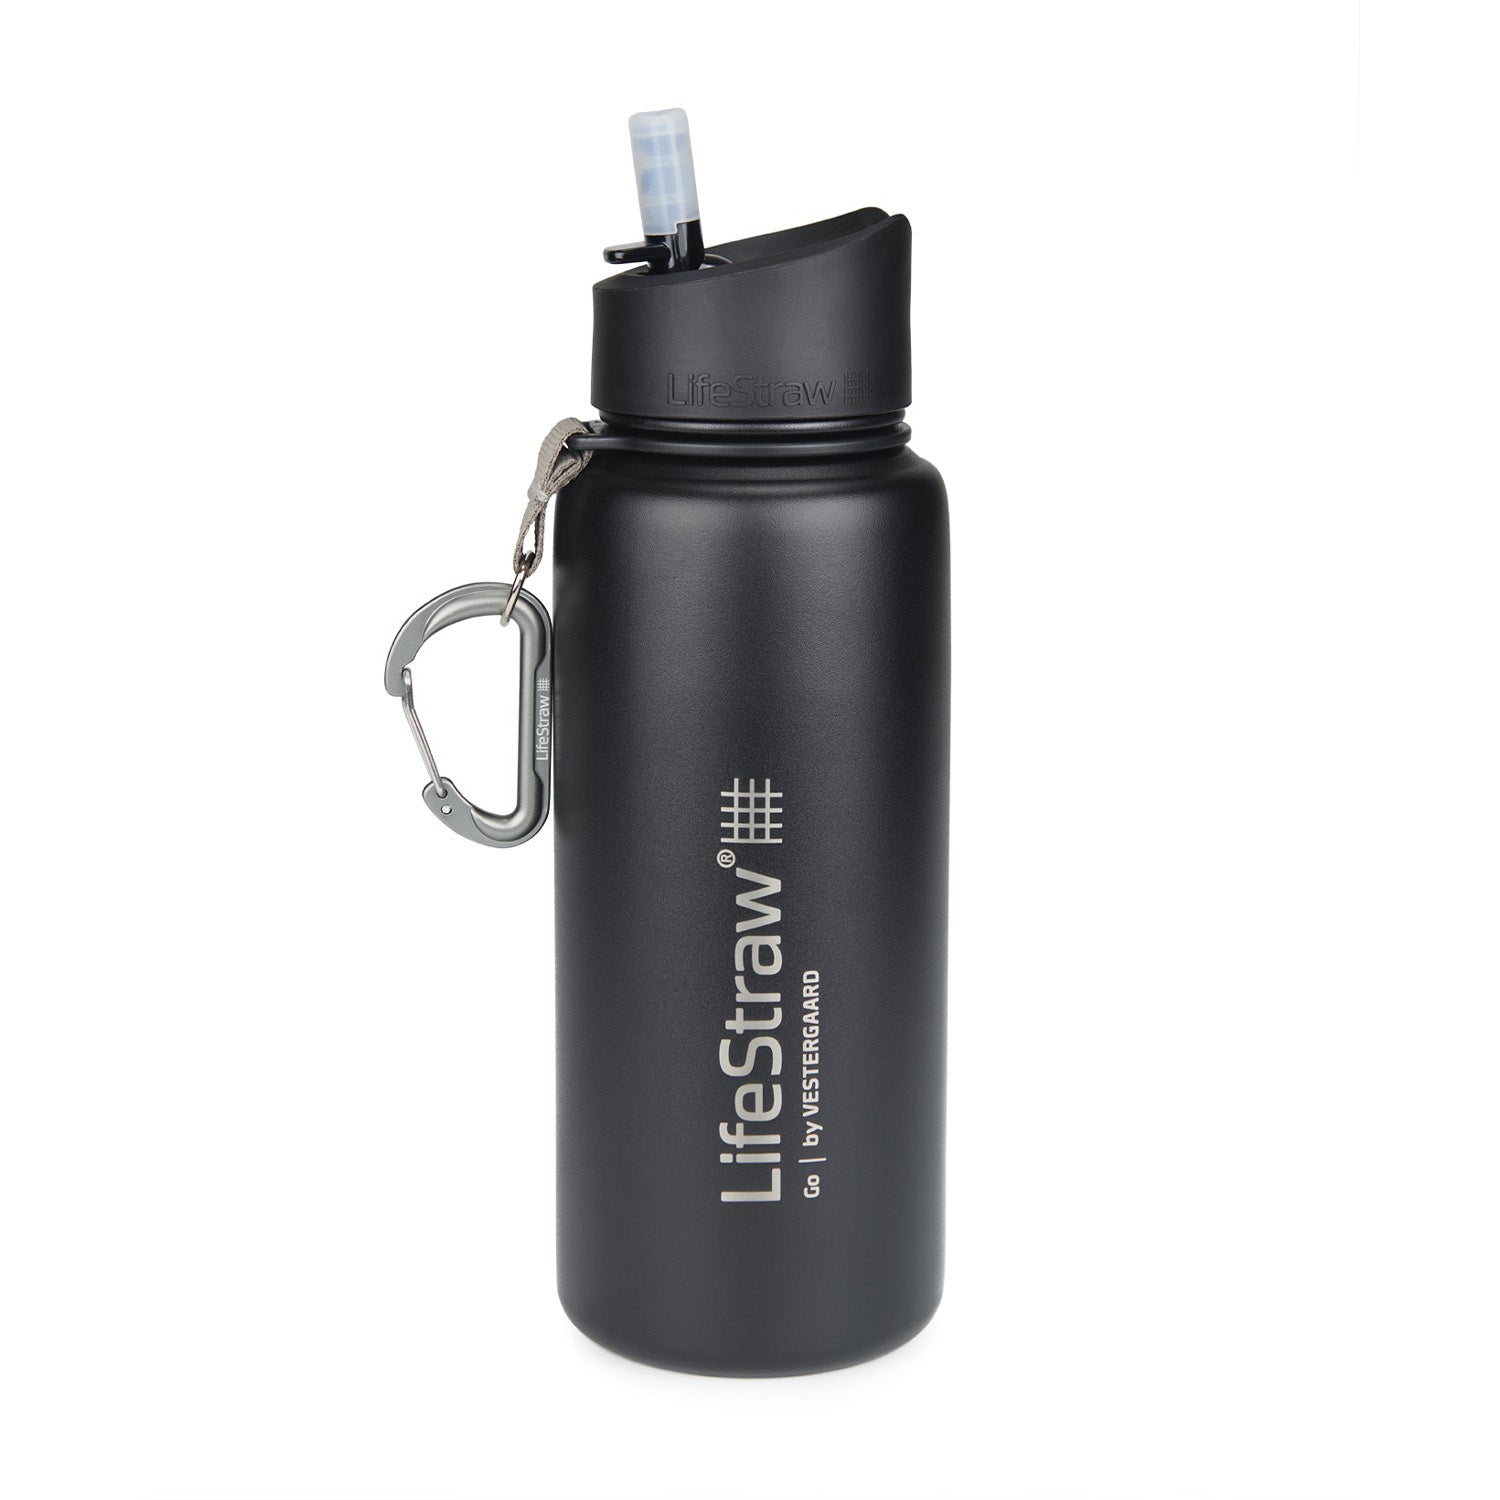 Analyzing image  LifeStrawGo_Funktionen  1500 × 1500 Pixel  Outdoor Filterflasche, Trinkflasche mit Wasserfilter